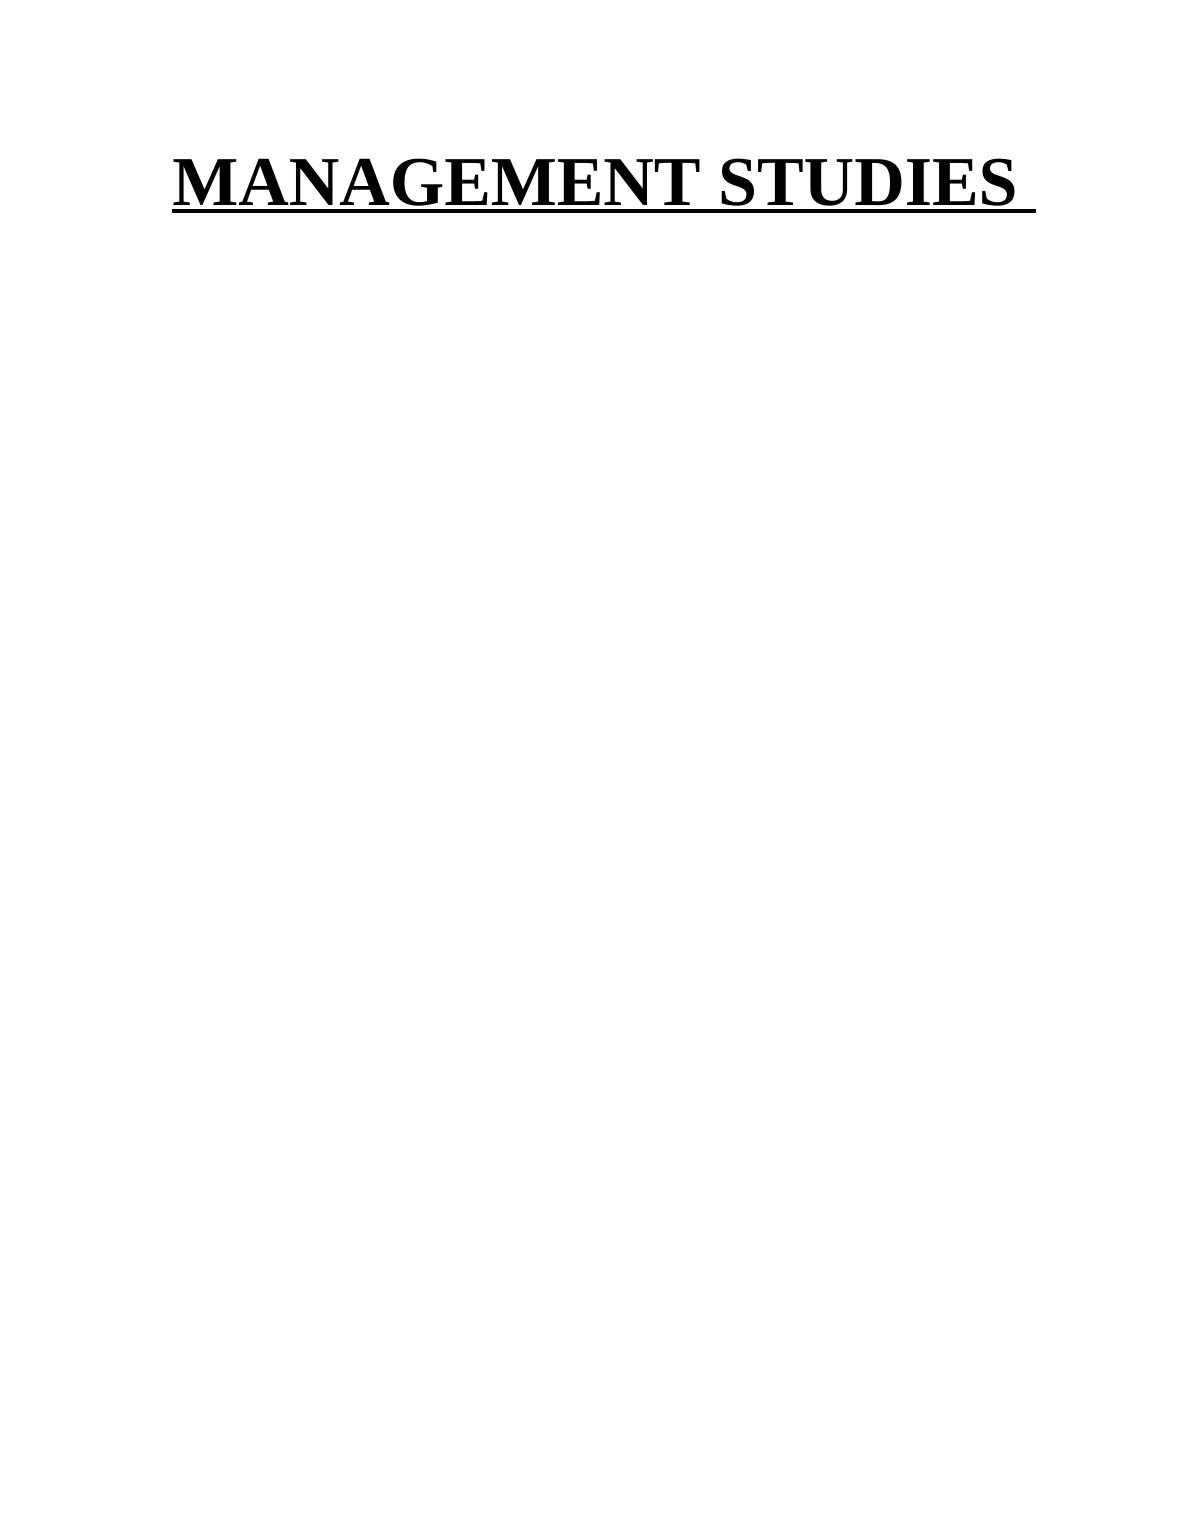 Scientific Management in Modern Organization_1